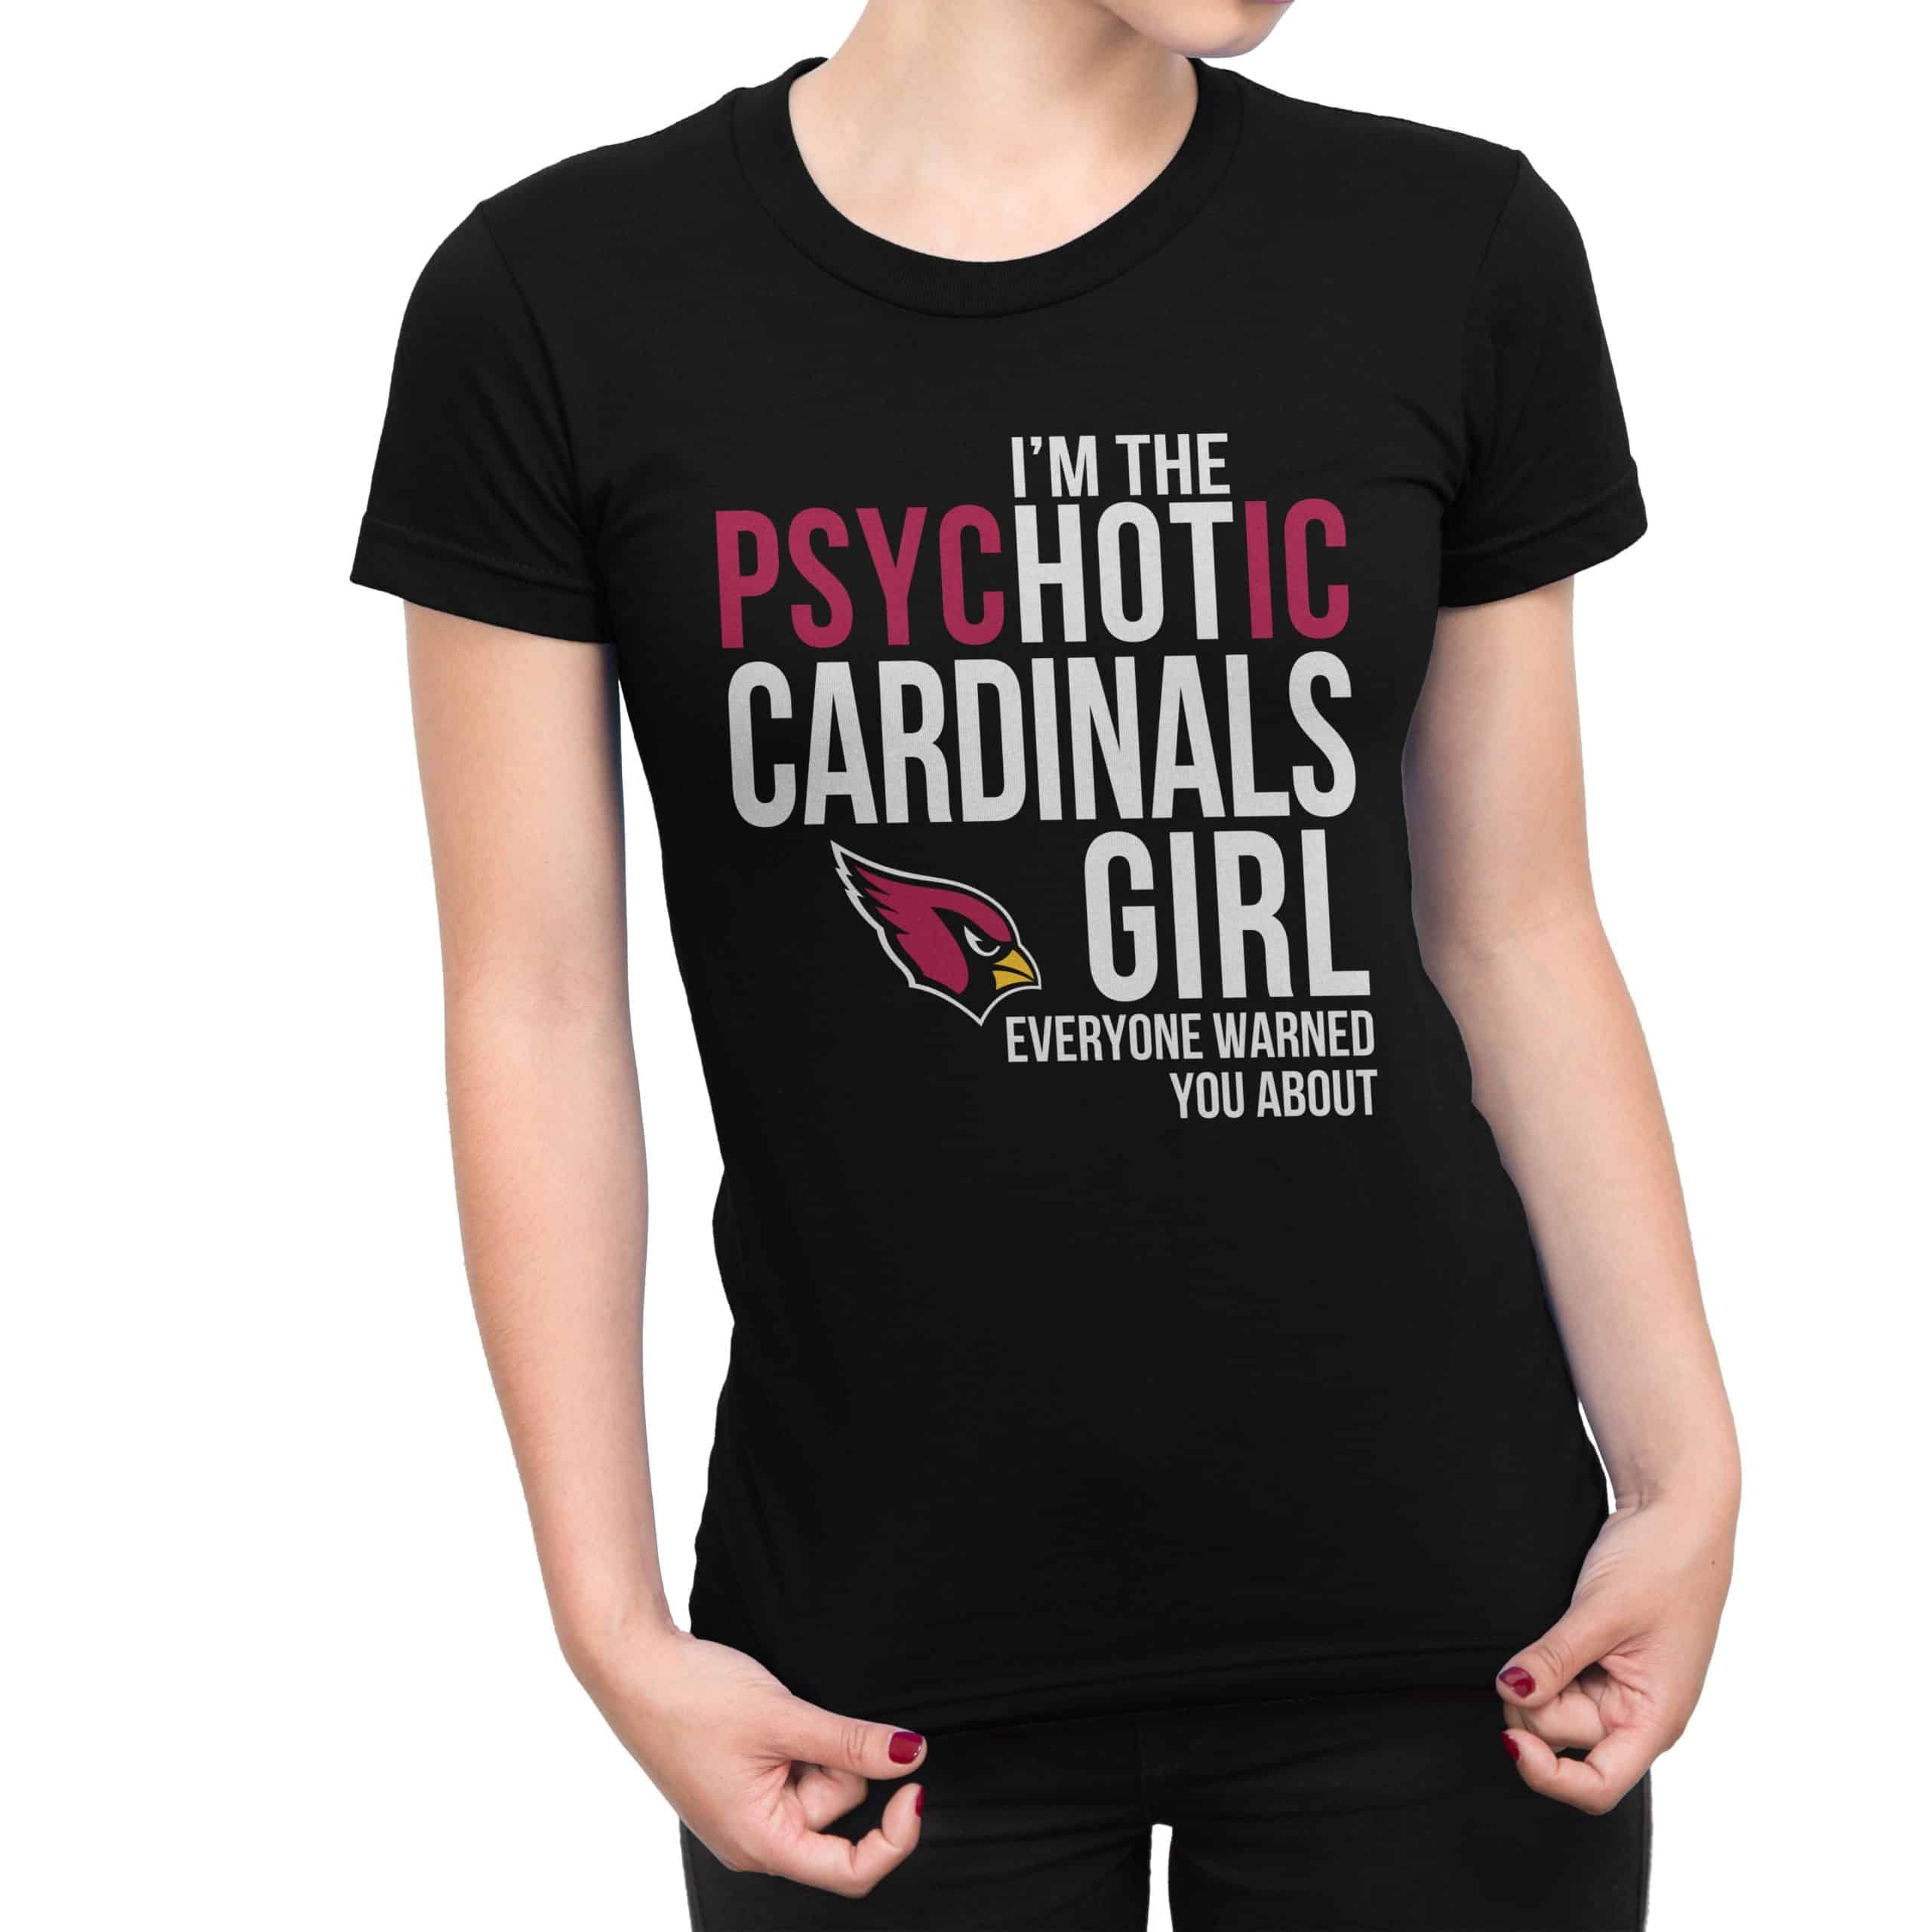 funny cardinals shirts